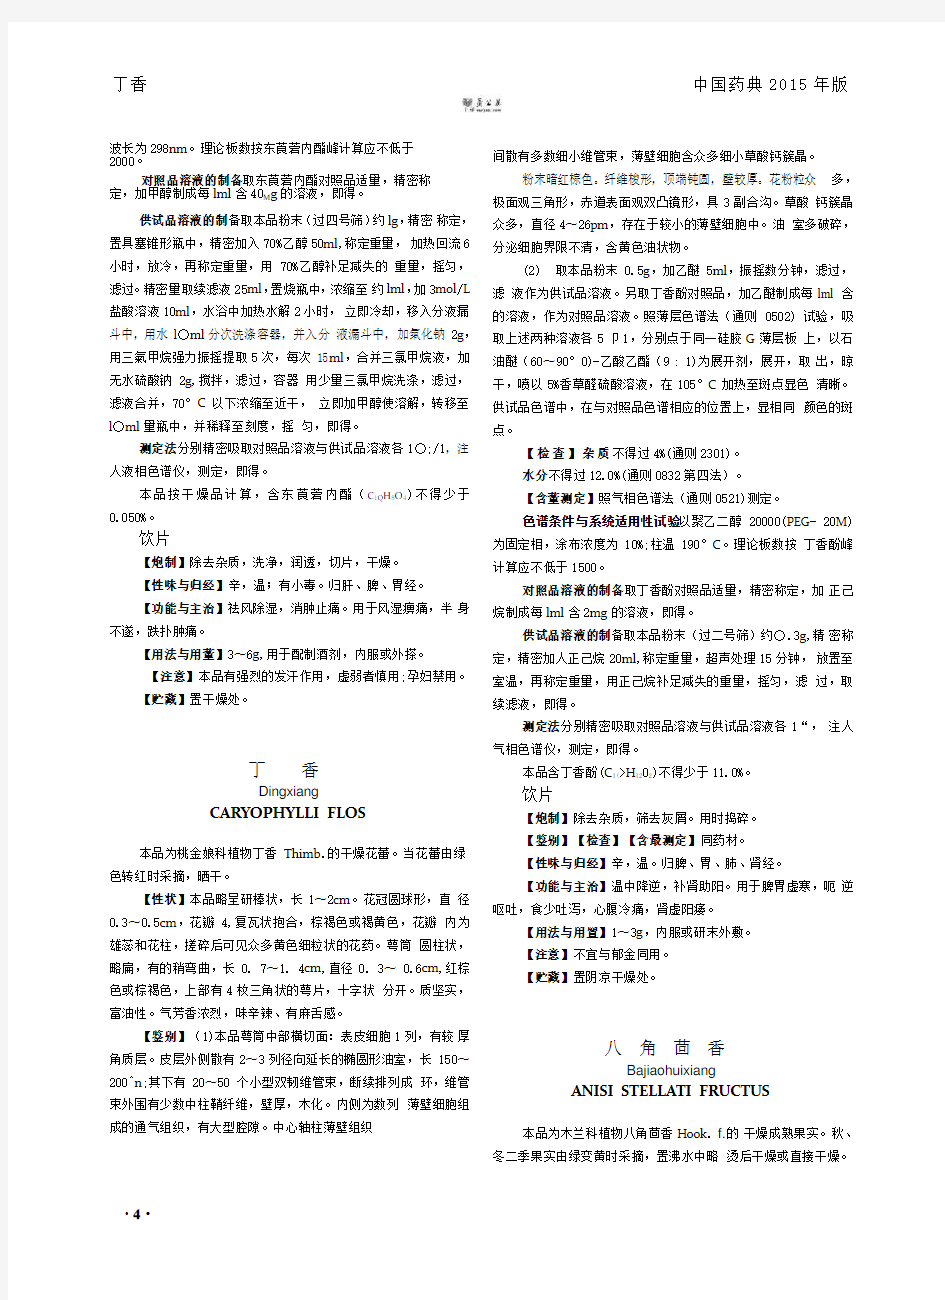 《中国药典》2015一部中药材部分Word版1-15页